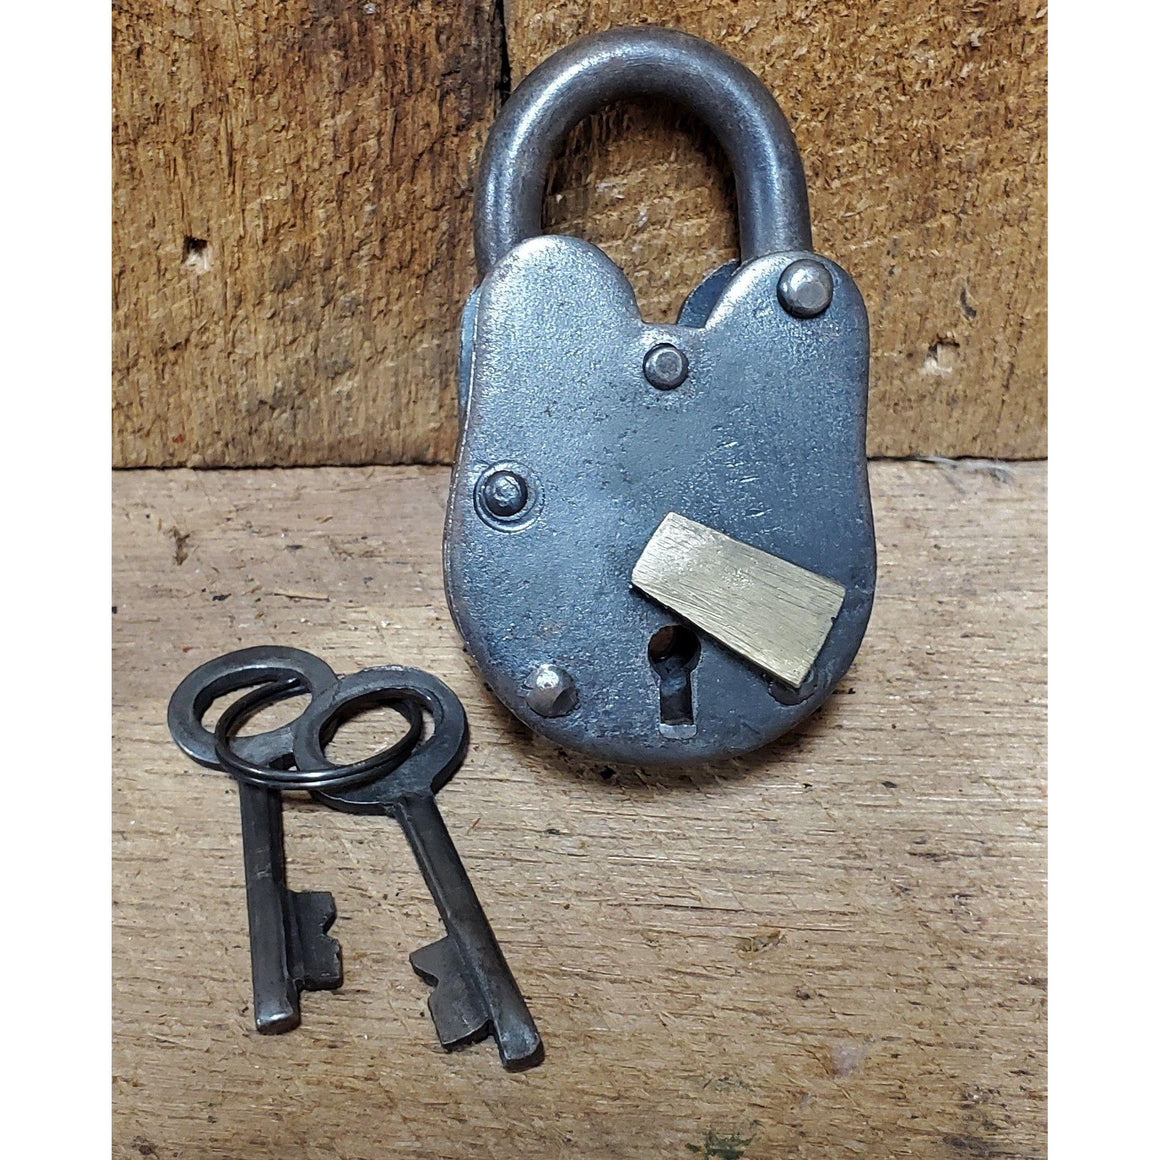 Lock & Key Found Pieces